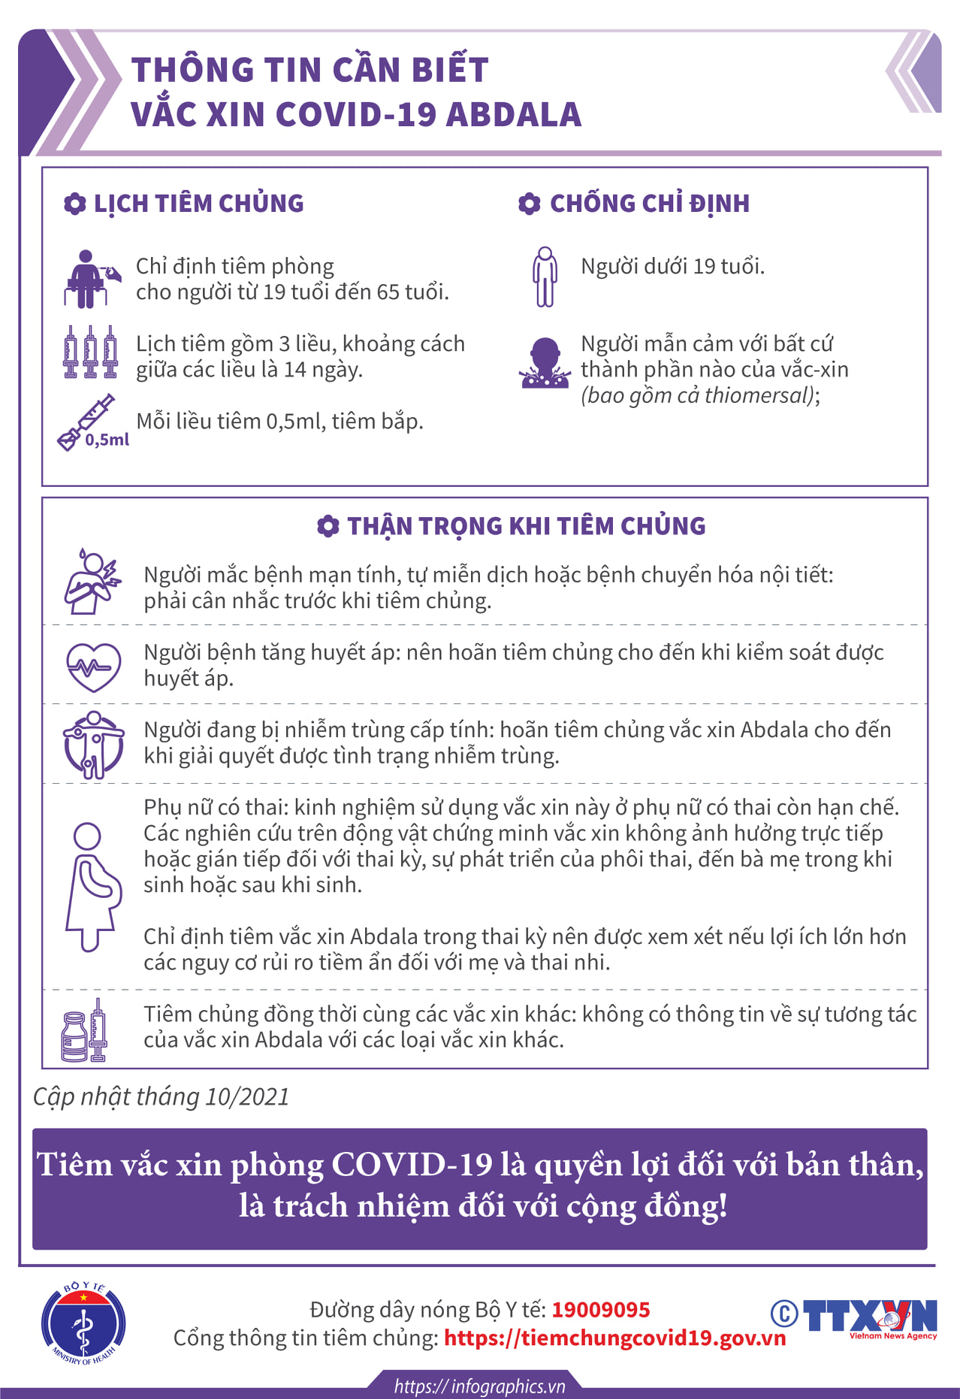 [Infographic] Thông tin cần biết về 3 loại vaccine  phòng Covid-19 - Ảnh 10